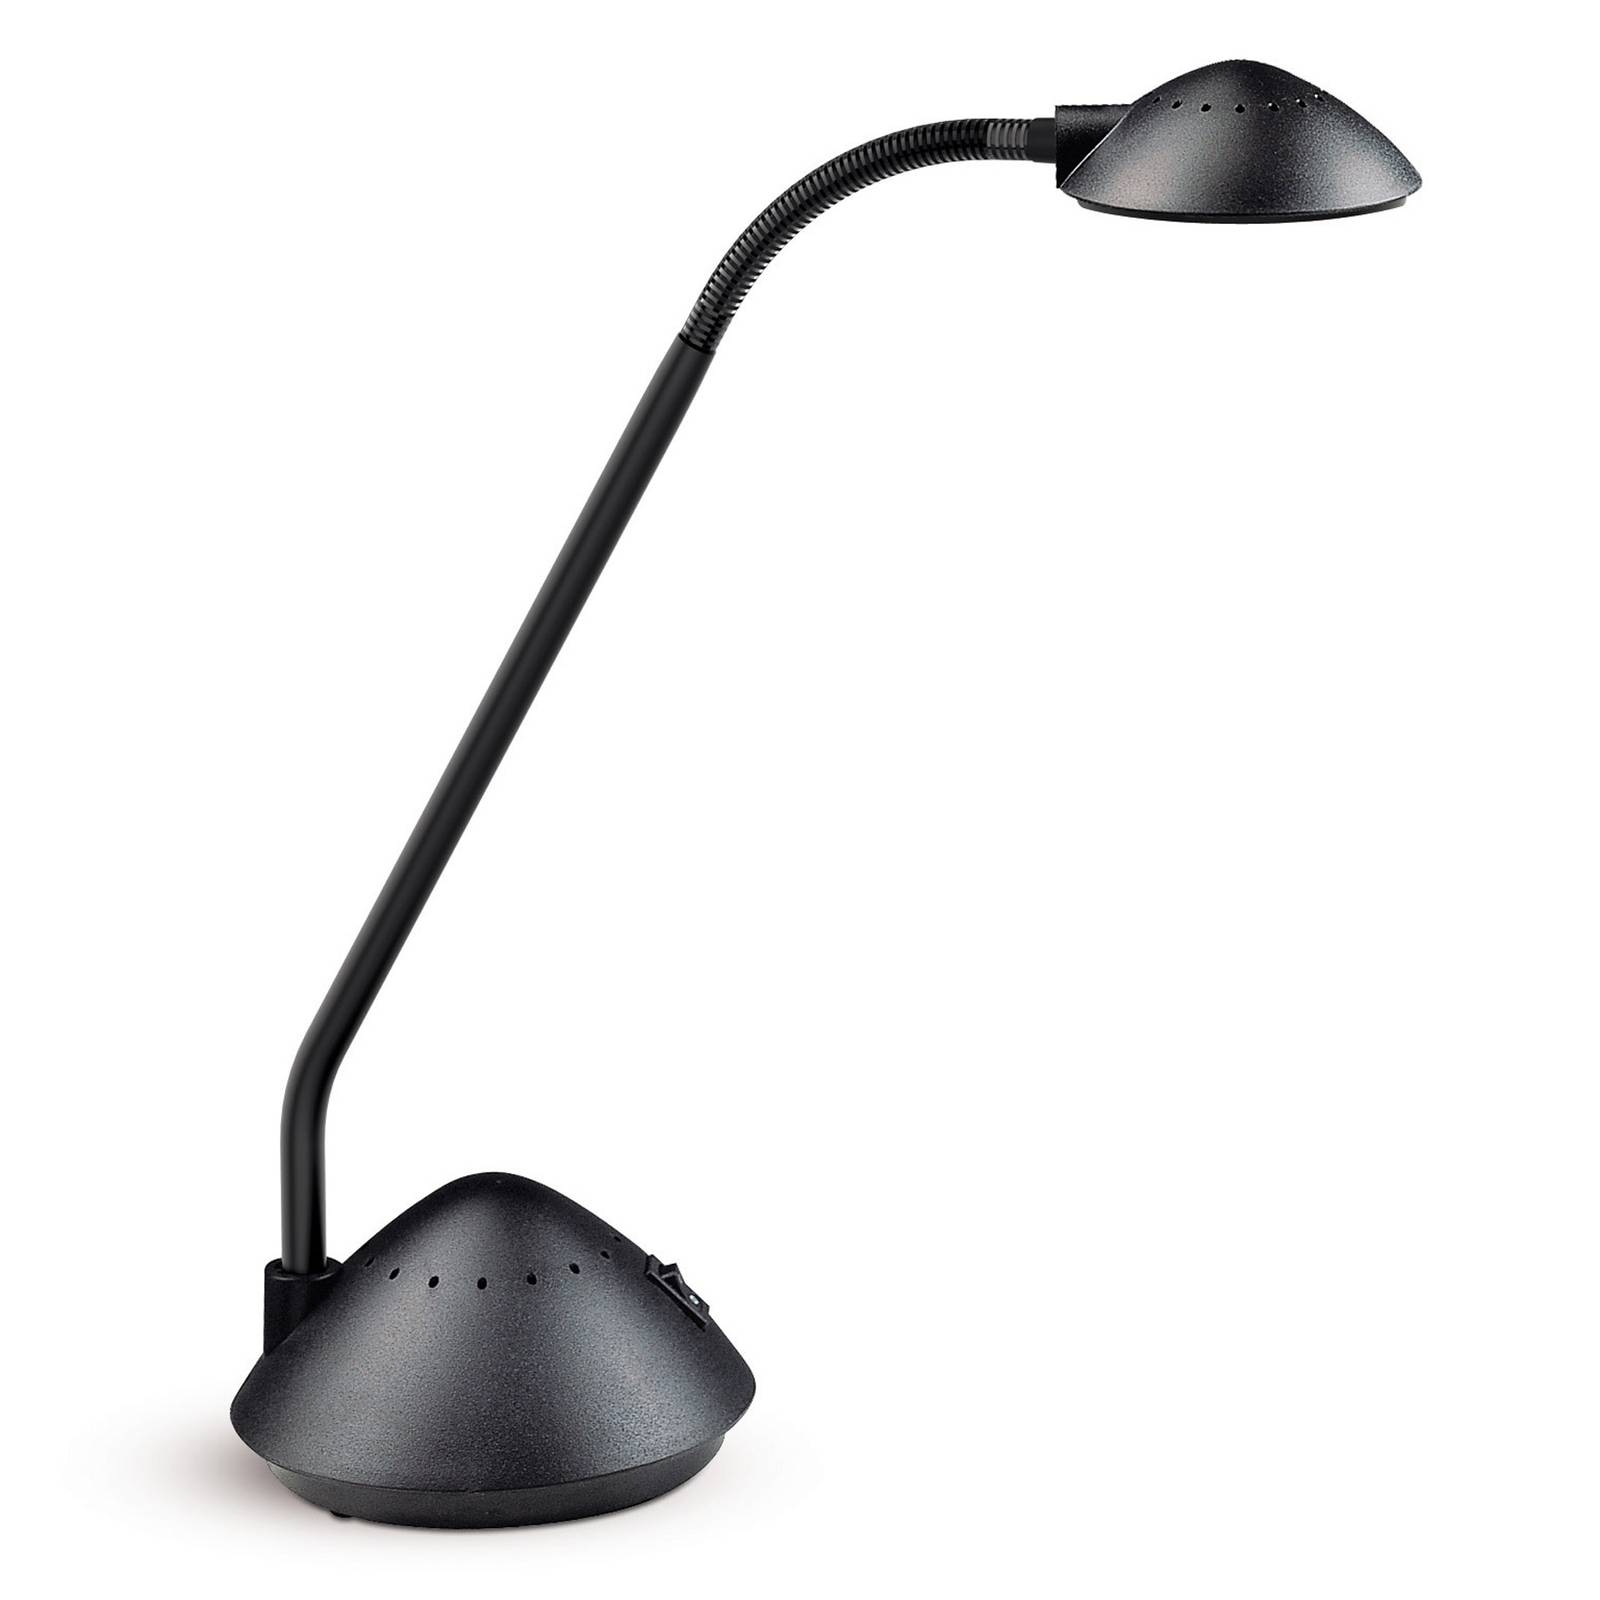 LED asztali lámpa MAULarc flexarm fekete